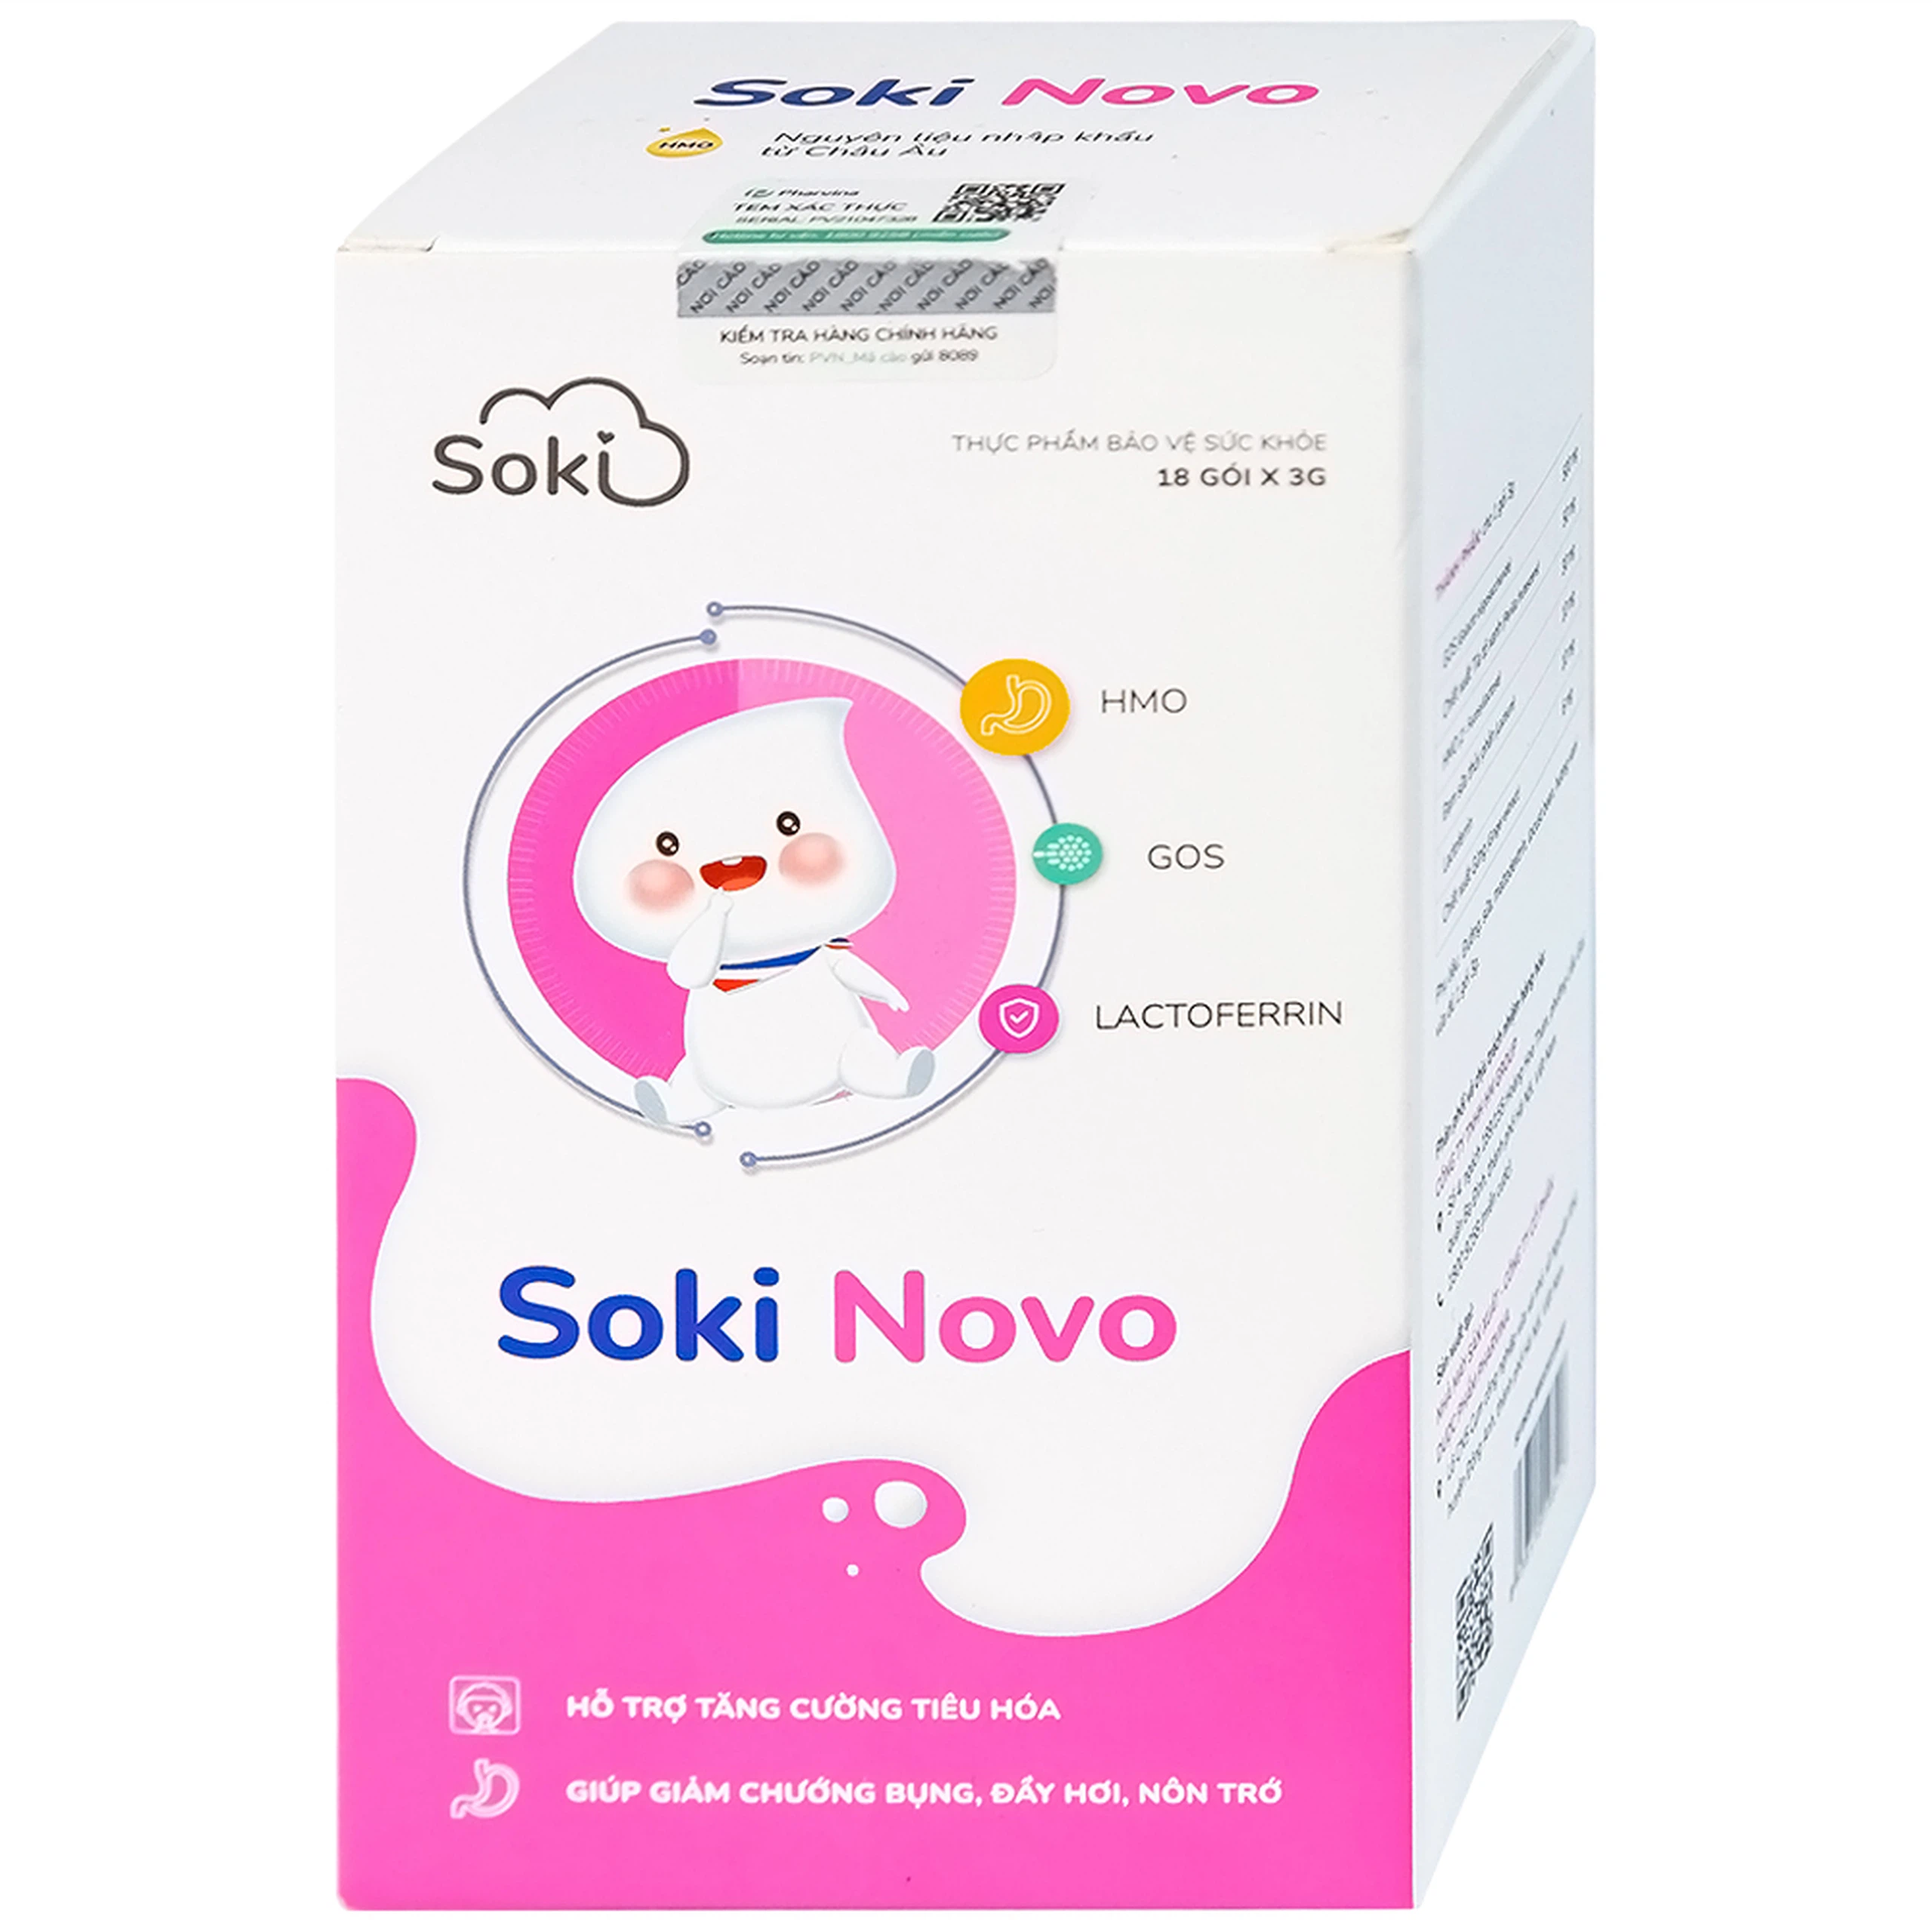 Bột hòa tan Soki Novo hỗ trợ tăng cường tiêu hóa, giúp giảm chướng bụng (18 gói x 3g)